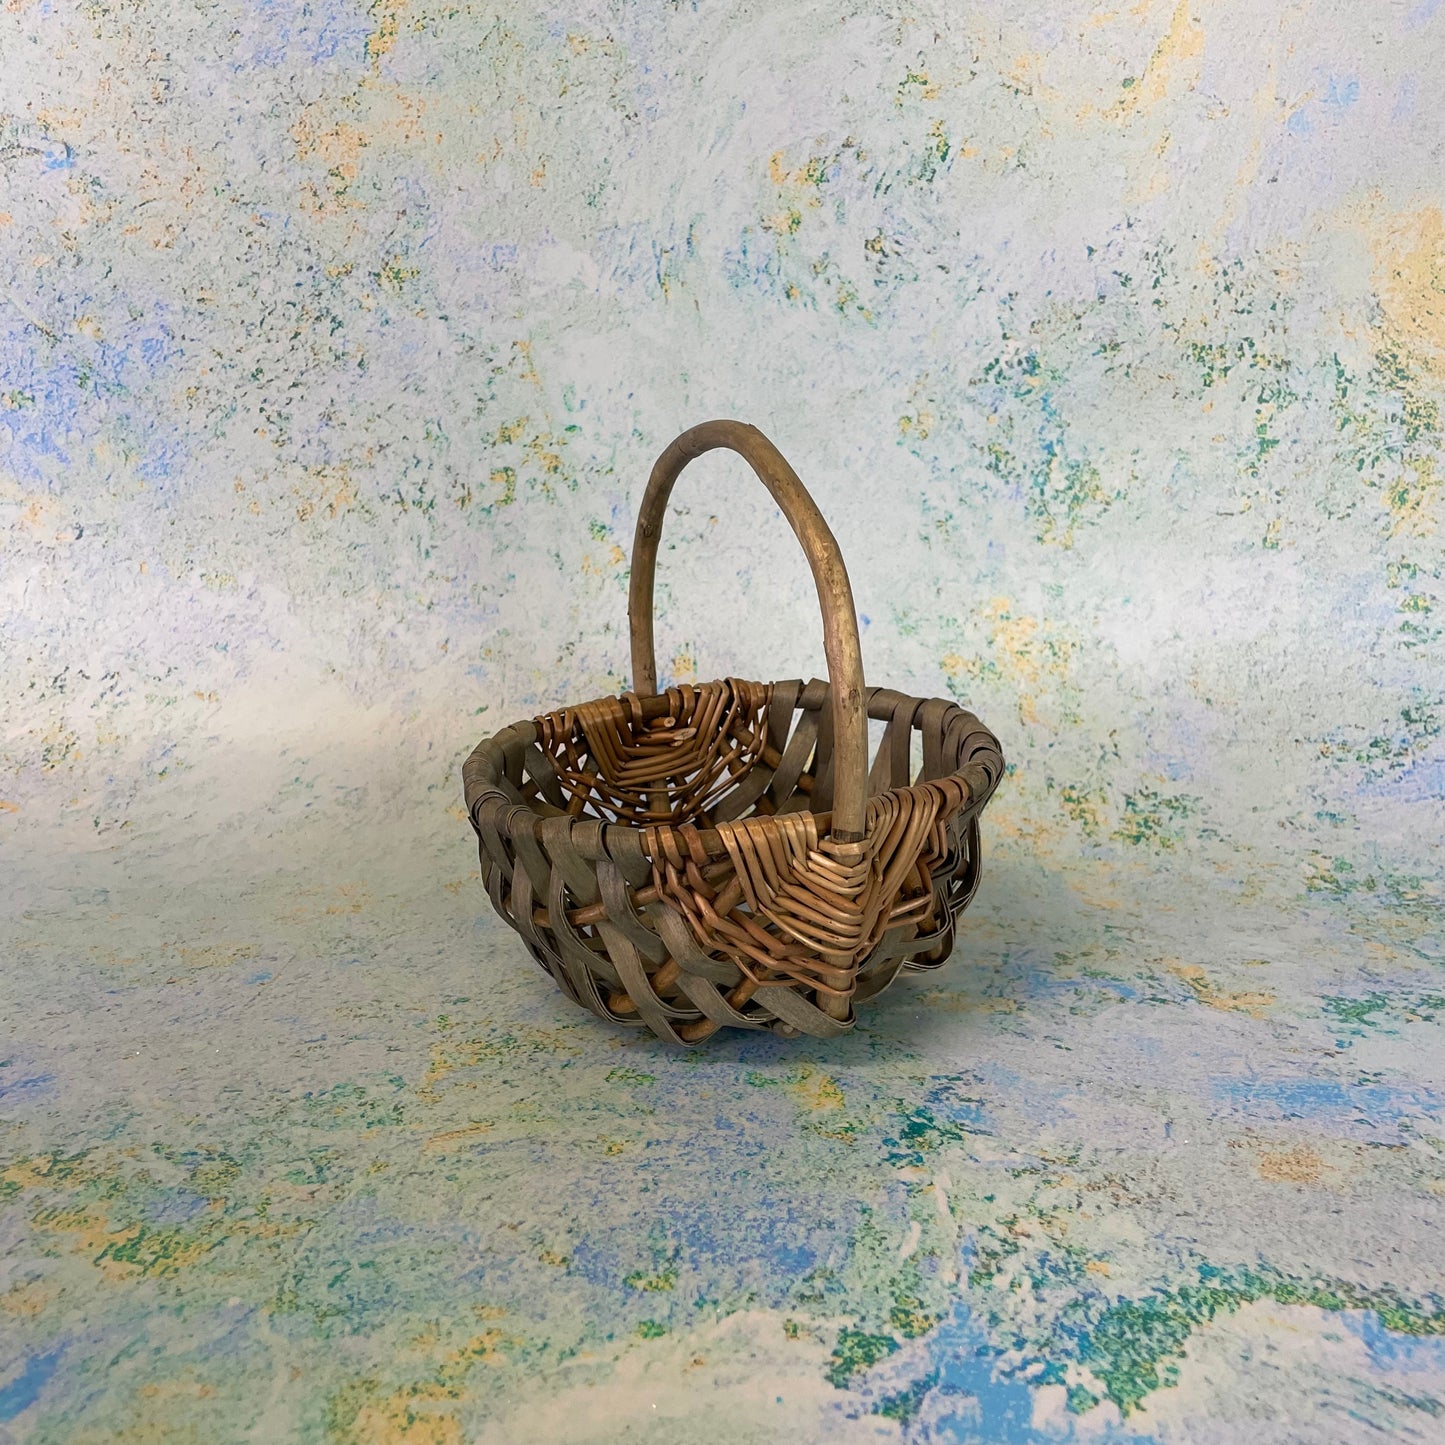 Mini Easter Egg Hunt Basket - Bamboo